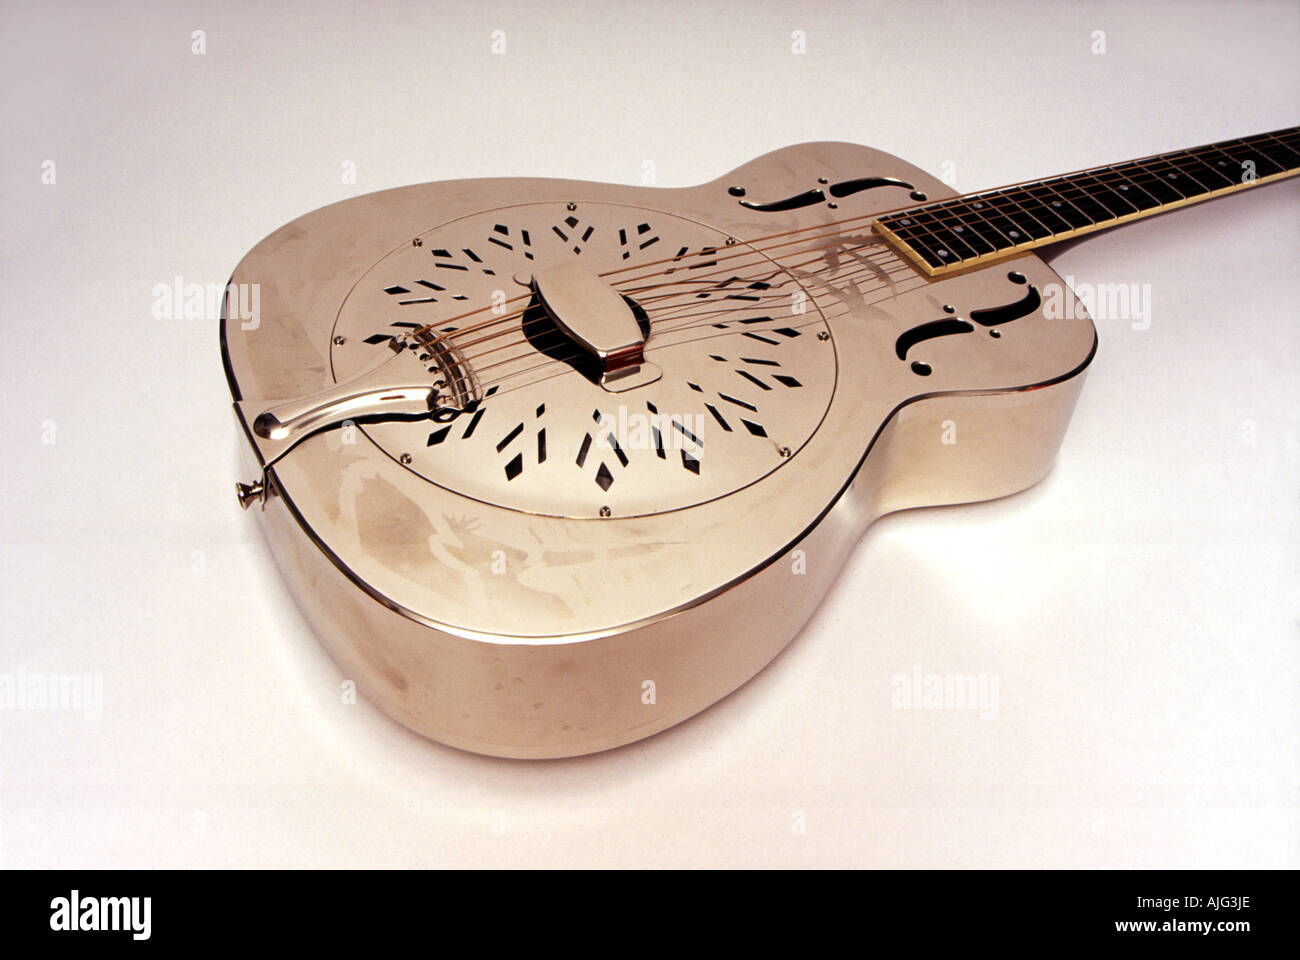 Mitte der 1930er Jahre Stil O Resonator Modell ähnlich dem von Mark Knopfler spielte Gitarre Stockfoto